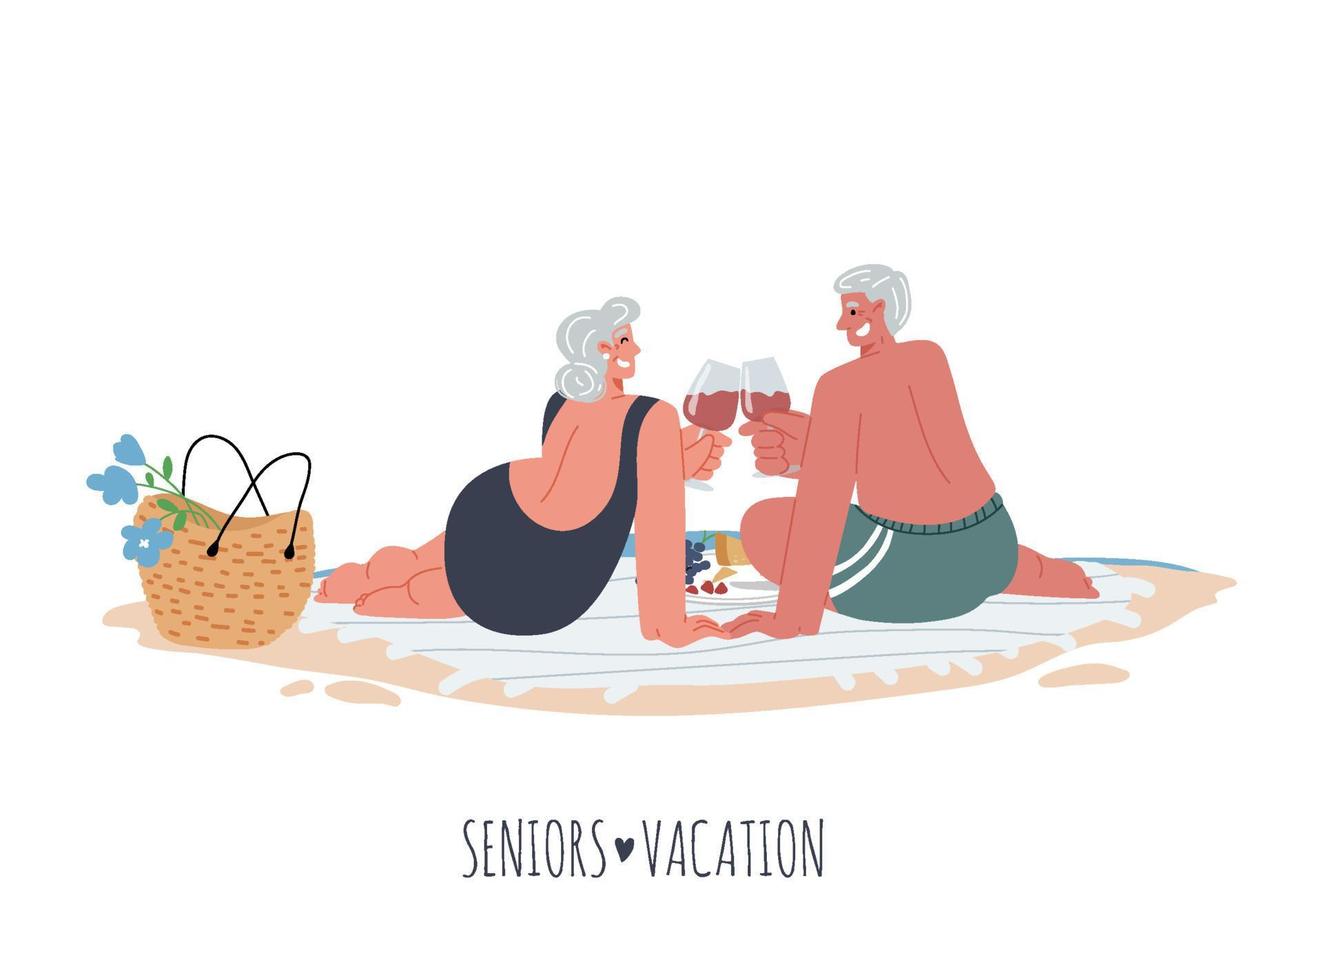 äldre kvinna och man gör en picknick vid havet på stranden filten dricker wine.vector platt illustration. vektor